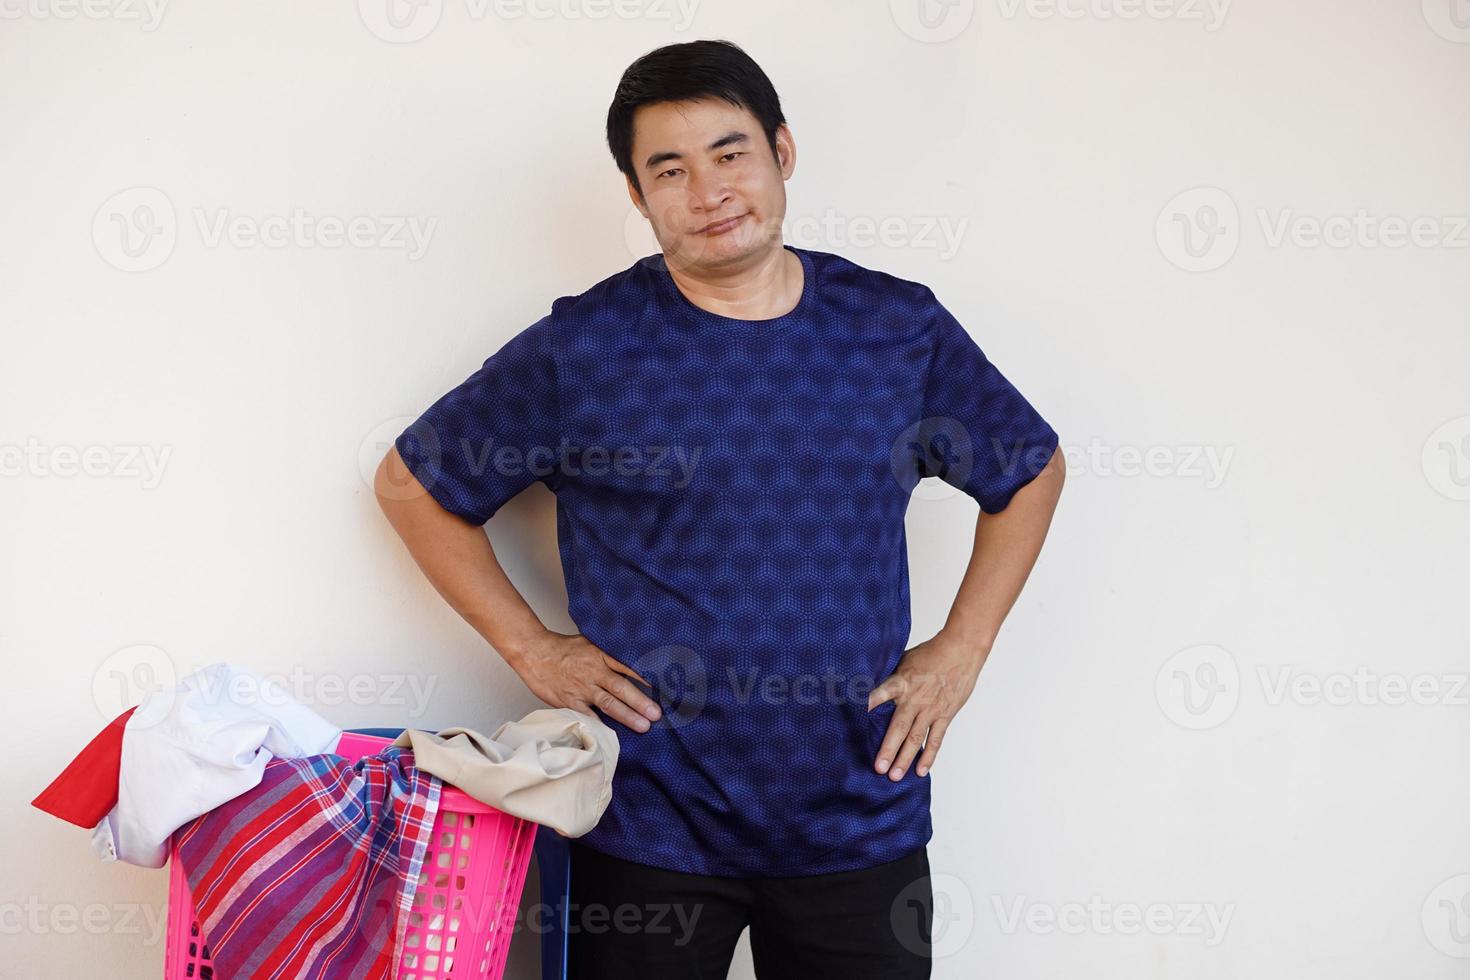 el hombre asiático se para al lado de la canasta de ropa, pone las manos en las caderas, sintiendo que no quiere lavar la ropa. concepto, tarea aburrida, tareas domésticas. foto